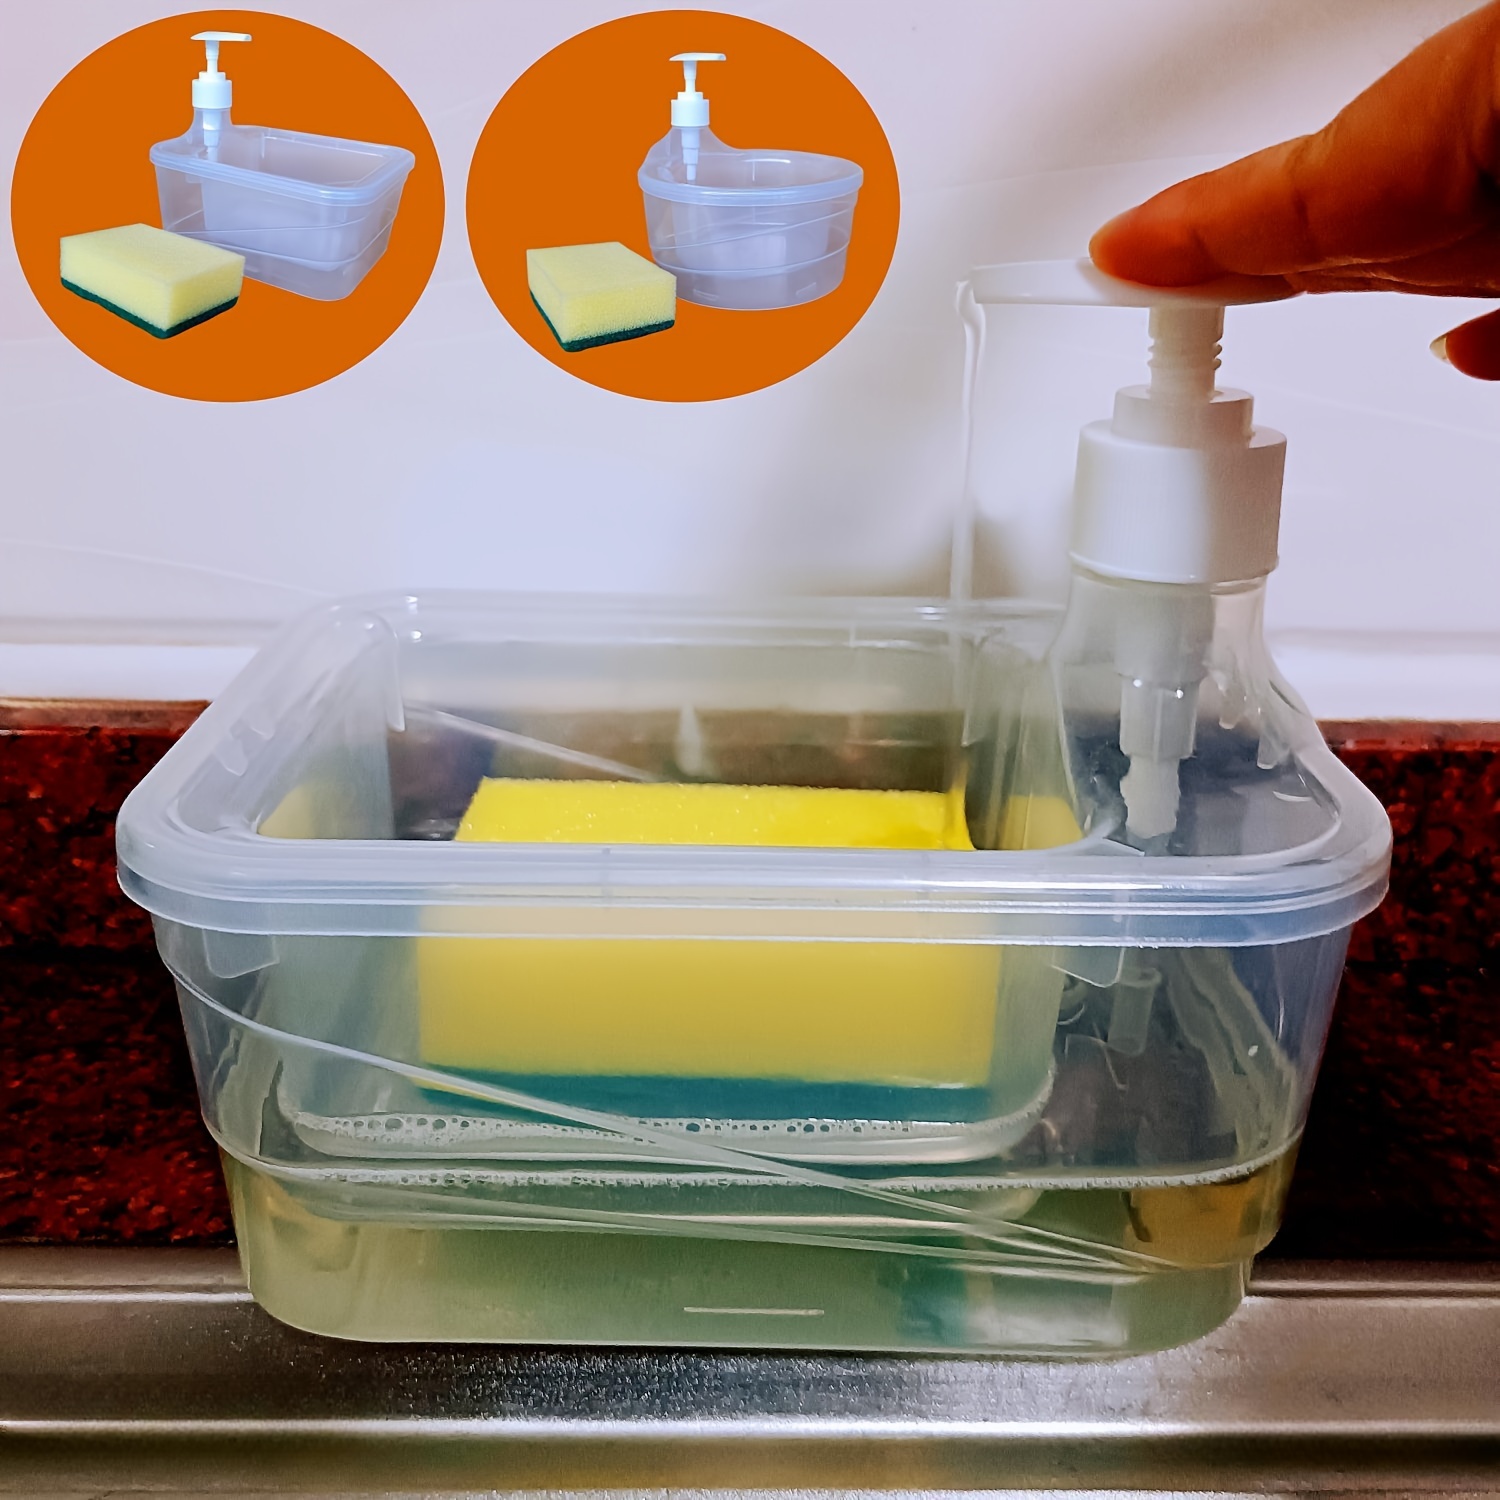  Zerodeko 2 bandejas de plástico Bandeja de plástico para servir  recipientes de plástico para llevar, ahorro de jabón de viaje, jabón de  bañera, jabón para platos, soporte de secado de jabón